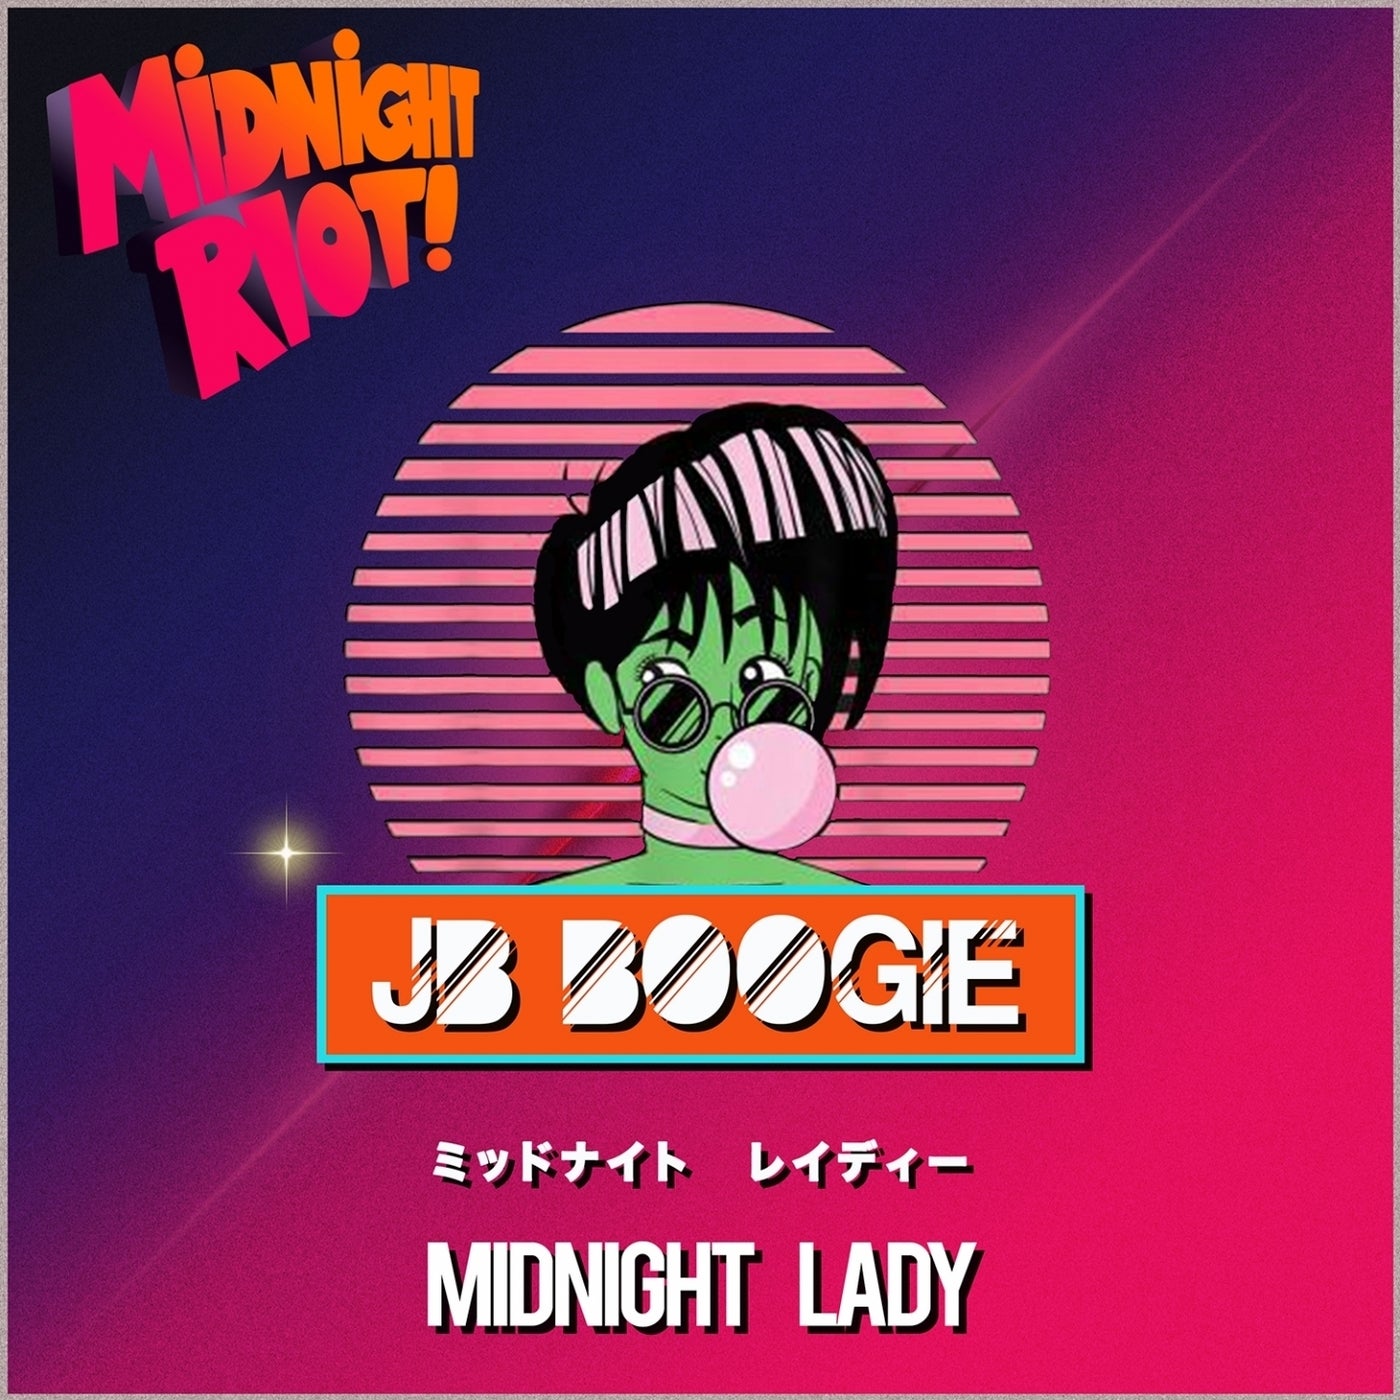 J.B. Boogie – Midnight Lady [MIDRIOTD303]